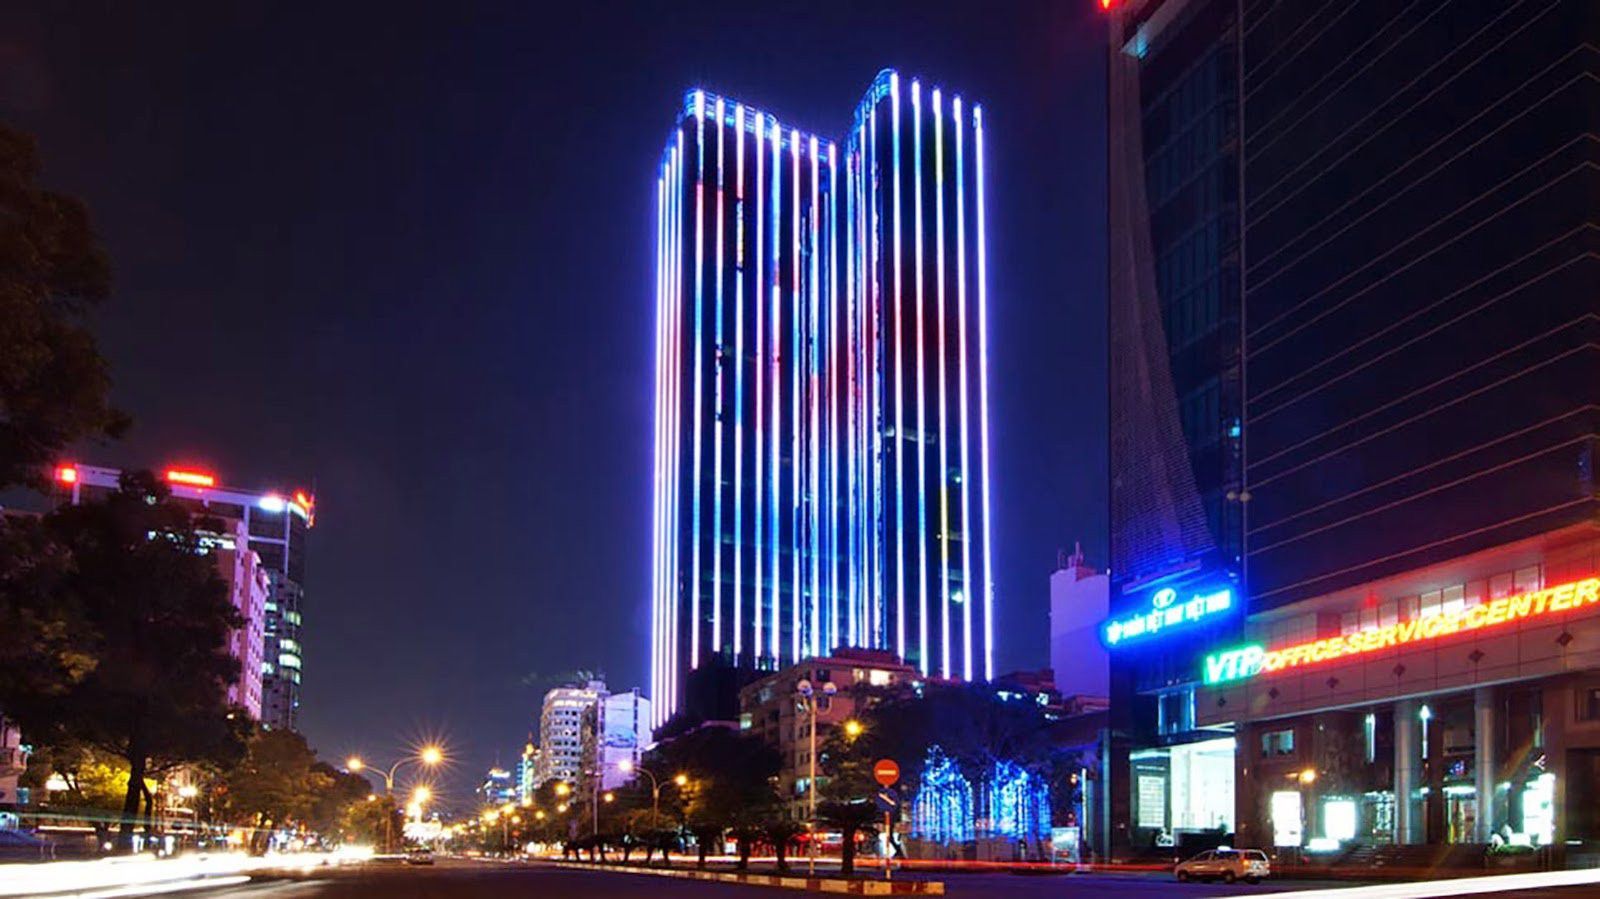 ベトナム初の６つ星ホテル「ザ・レヴェリー・サイゴン」で極上の宿泊を！